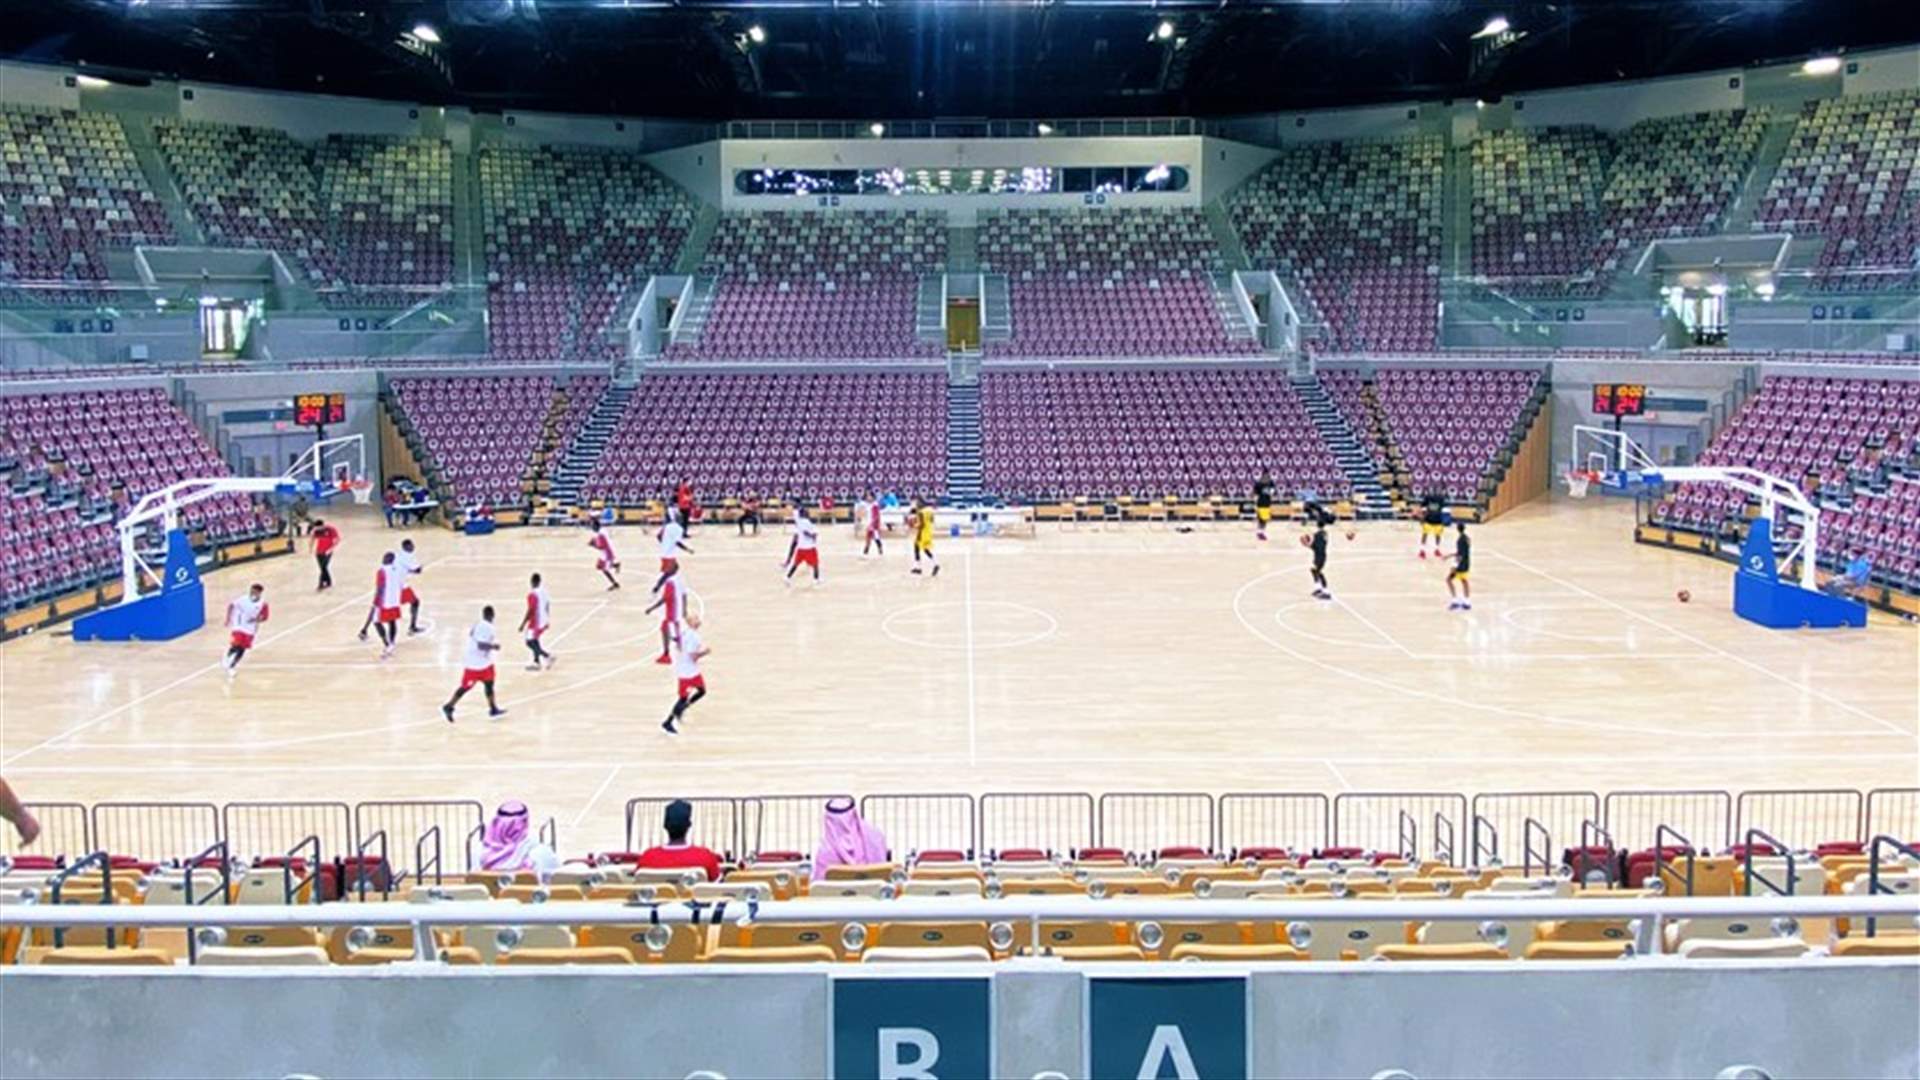 الوحدة السعودي ورالف سركيس في صدارة الدوري المنتظم بكرة السلة